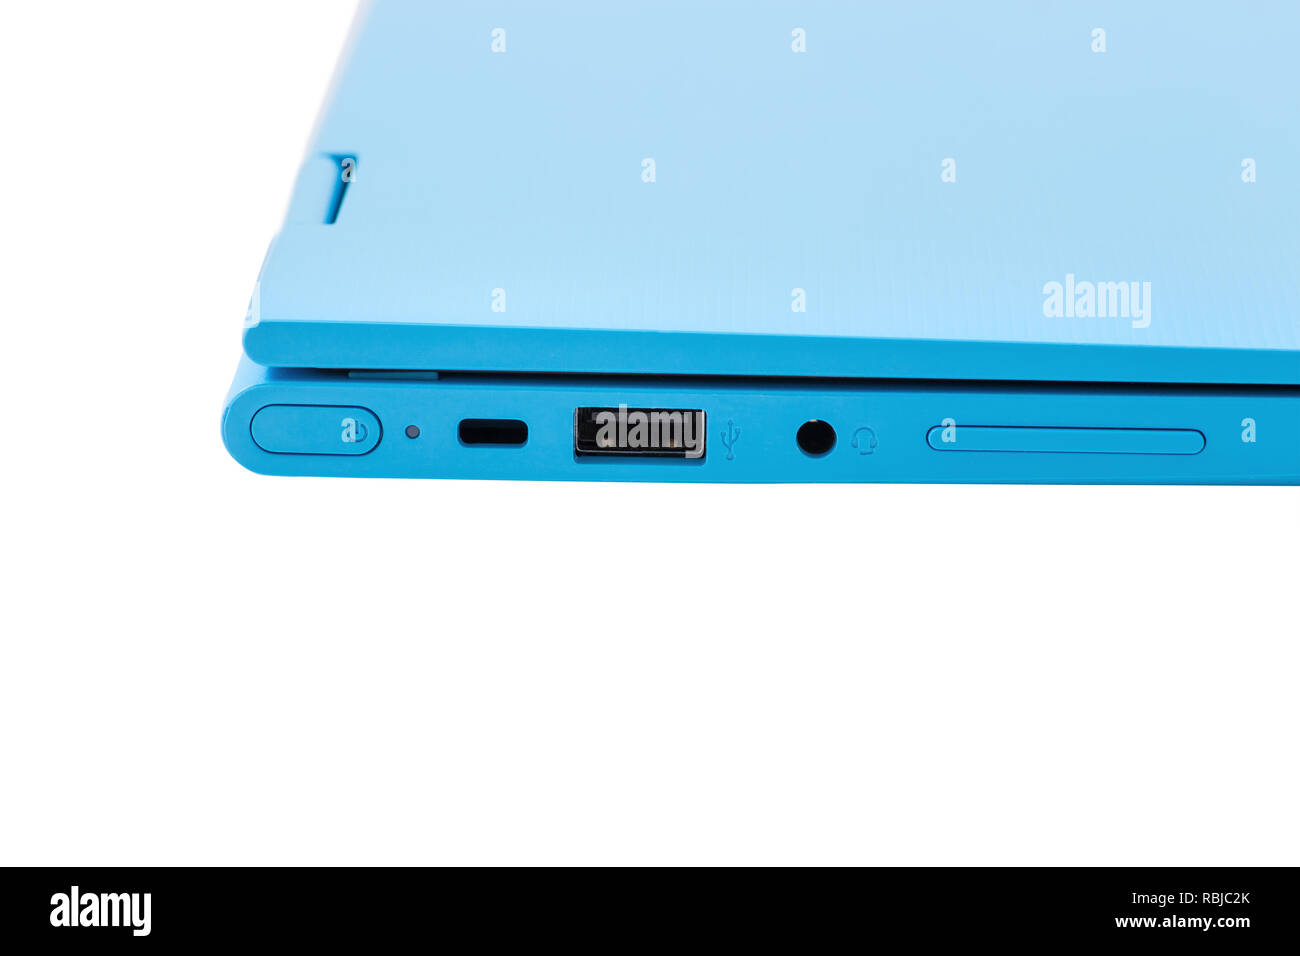 https://c8.alamy.com/compde/rbjc2k/teil-der-modernen-blau-laptop-mit-einem-netzschalter-usb-anschluss-kopfhoreranschluss-und-lautstarkeregler-rbjc2k.jpg